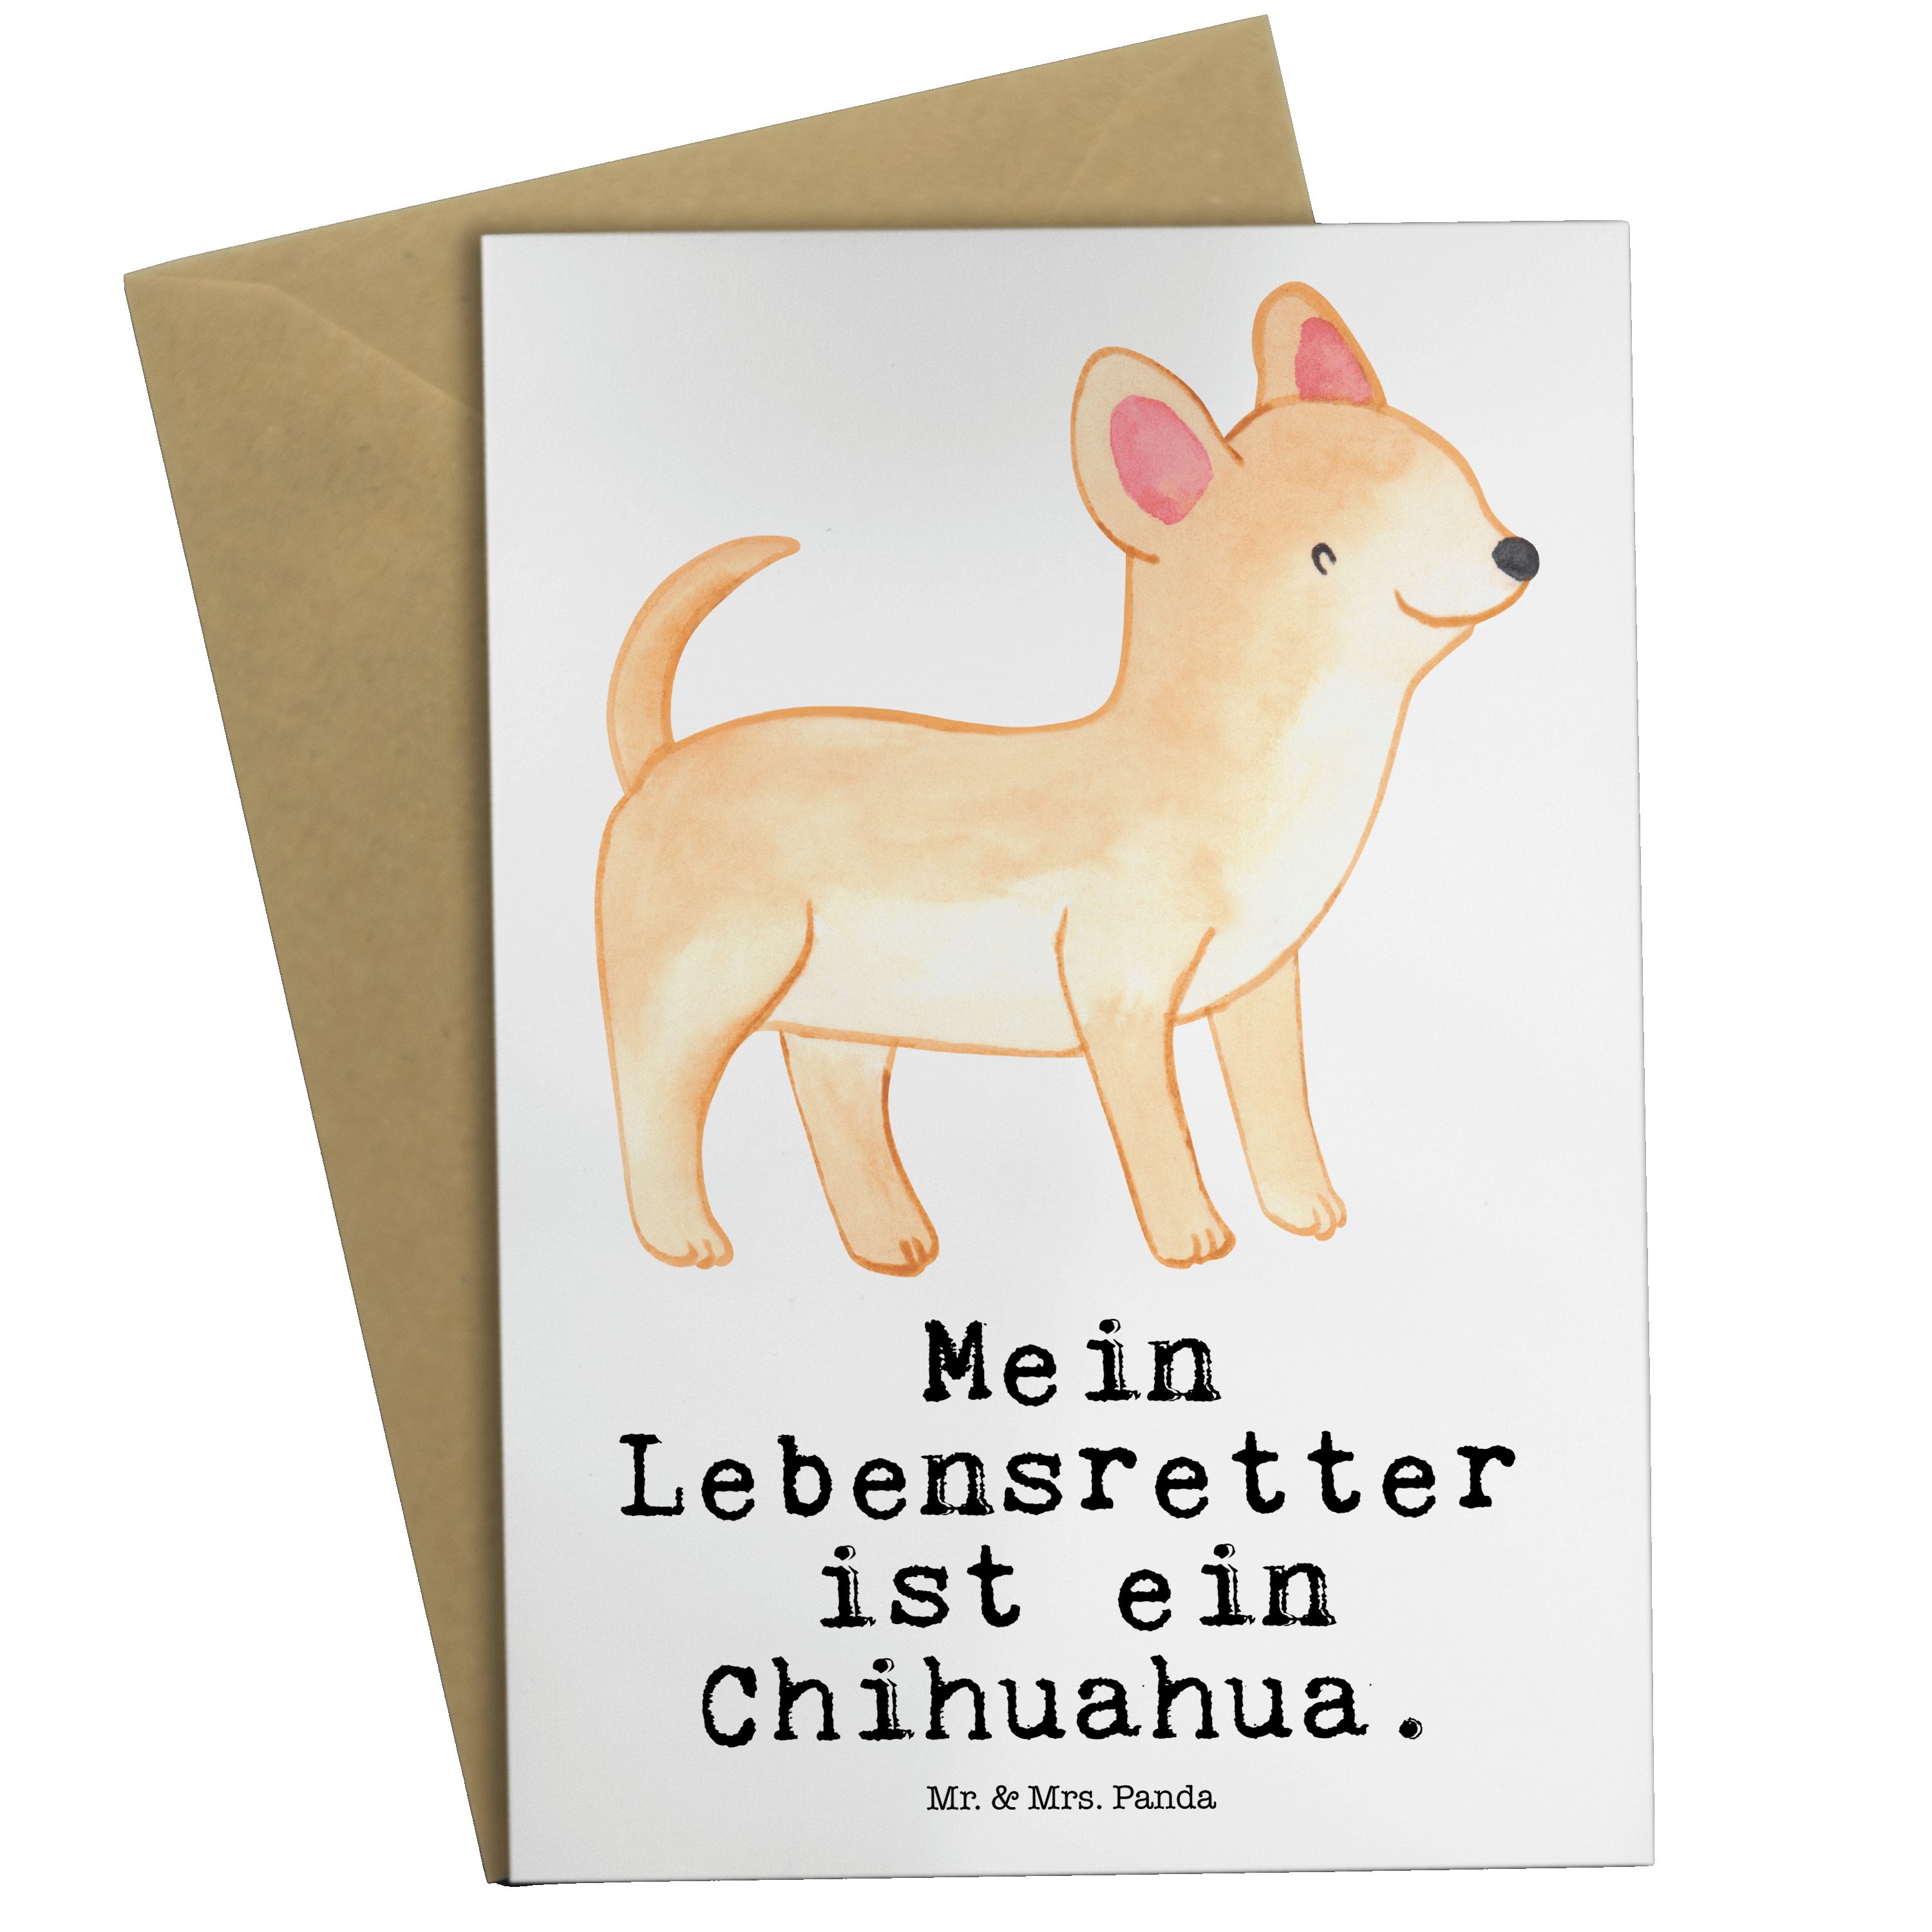 Mr. & Mrs. Panda Grußkarte Chihuahua Lebensretter - Weiß - Geschenk, Geburtstagskarte, Rassehund